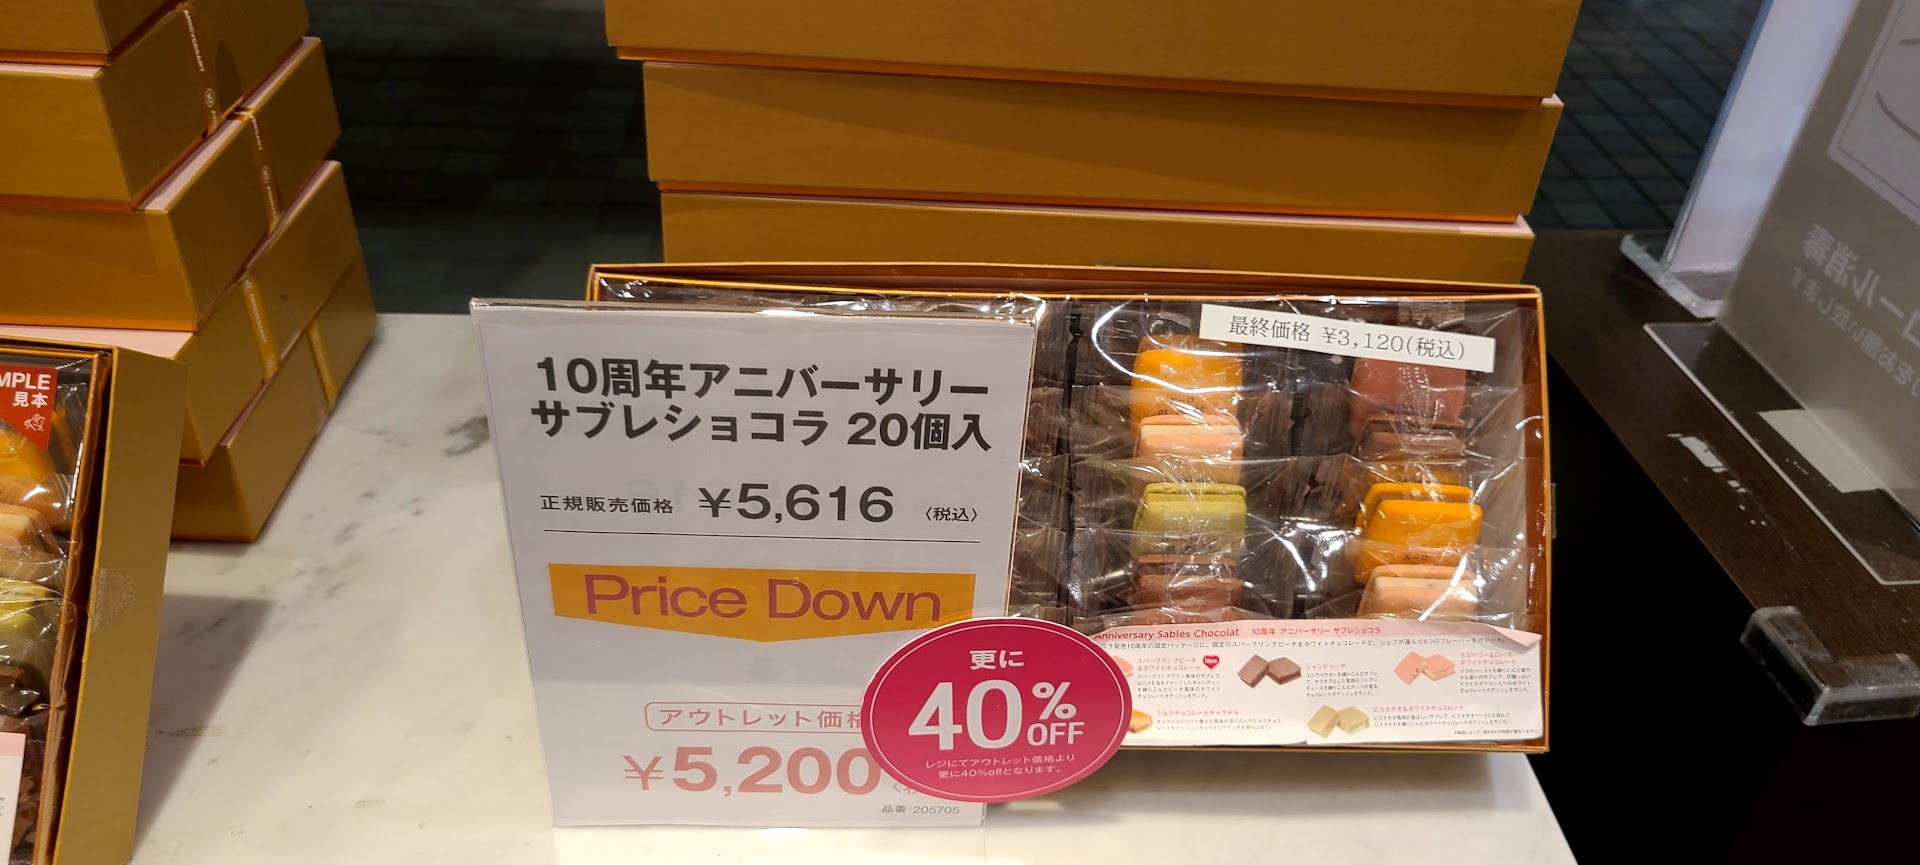 ゴディバ御殿場プレミアムアウトレット激安品 (21)3120円のクッキーセット